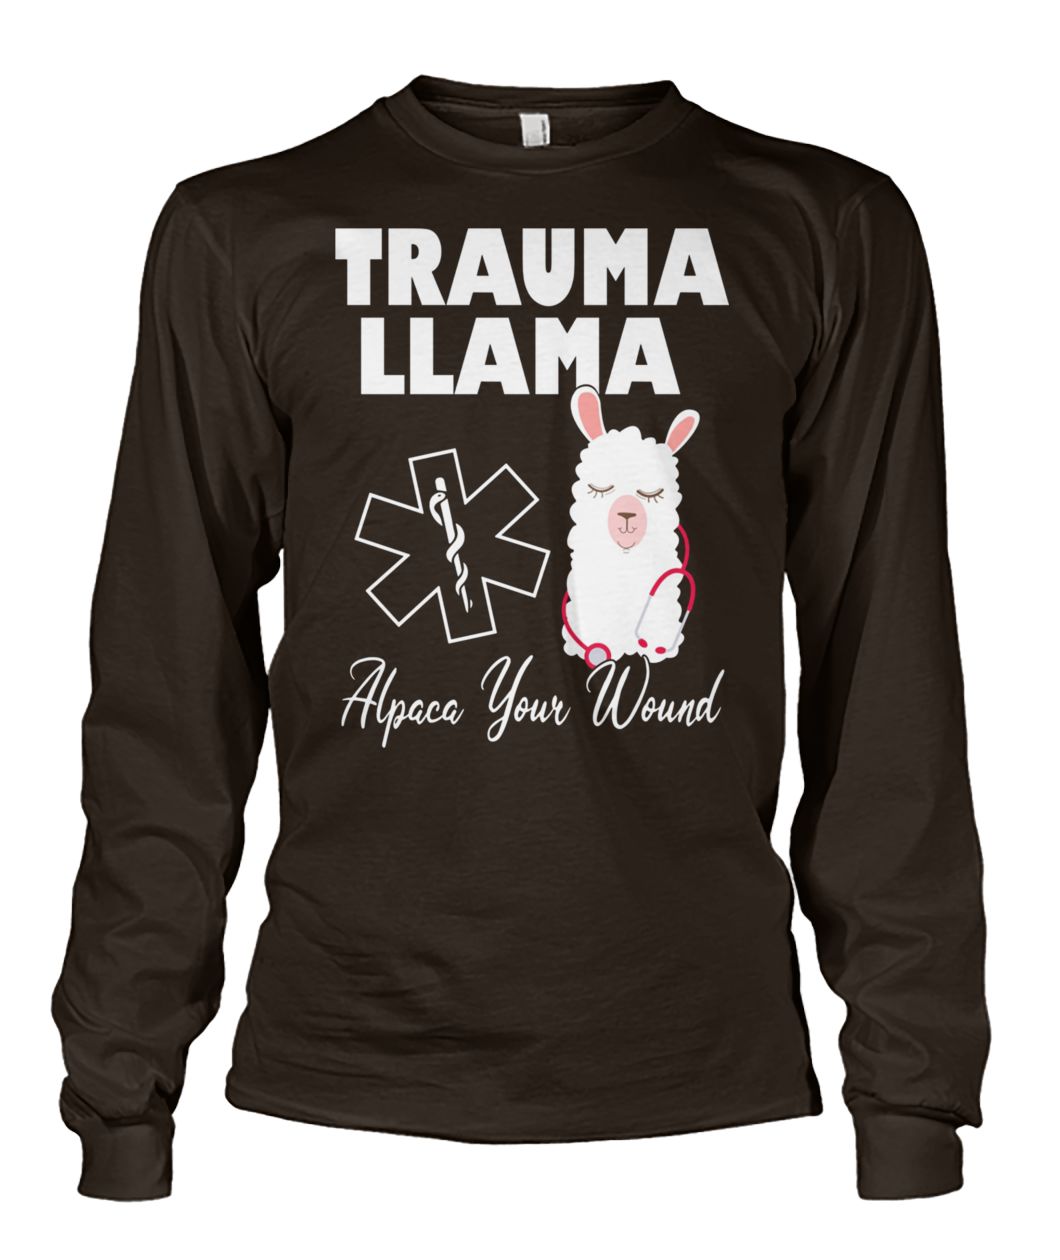 Trauma llama alpaca your wound nurse unisex long sleeve